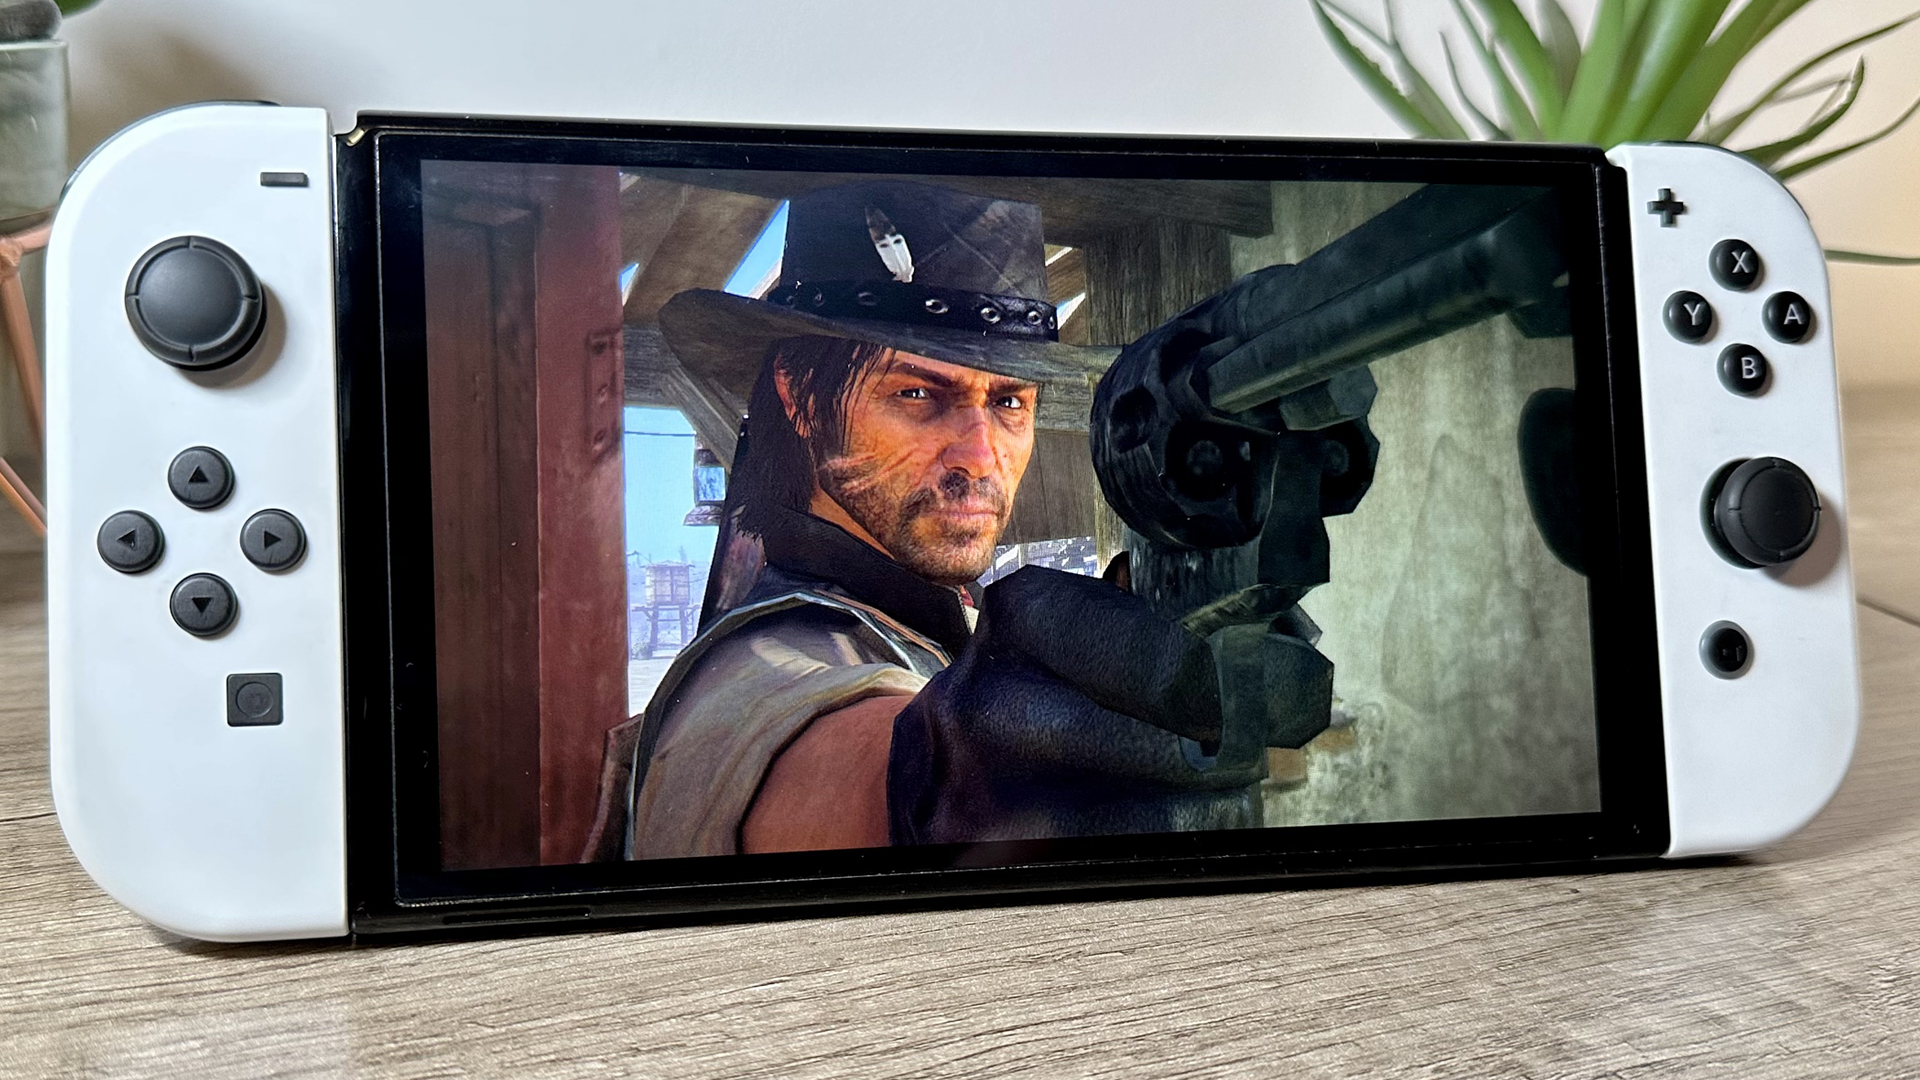 Red Dead Redemption 2 – PC 4K Max vs. PS4 Pro vs. Xbox One X Graphics  Comparison 